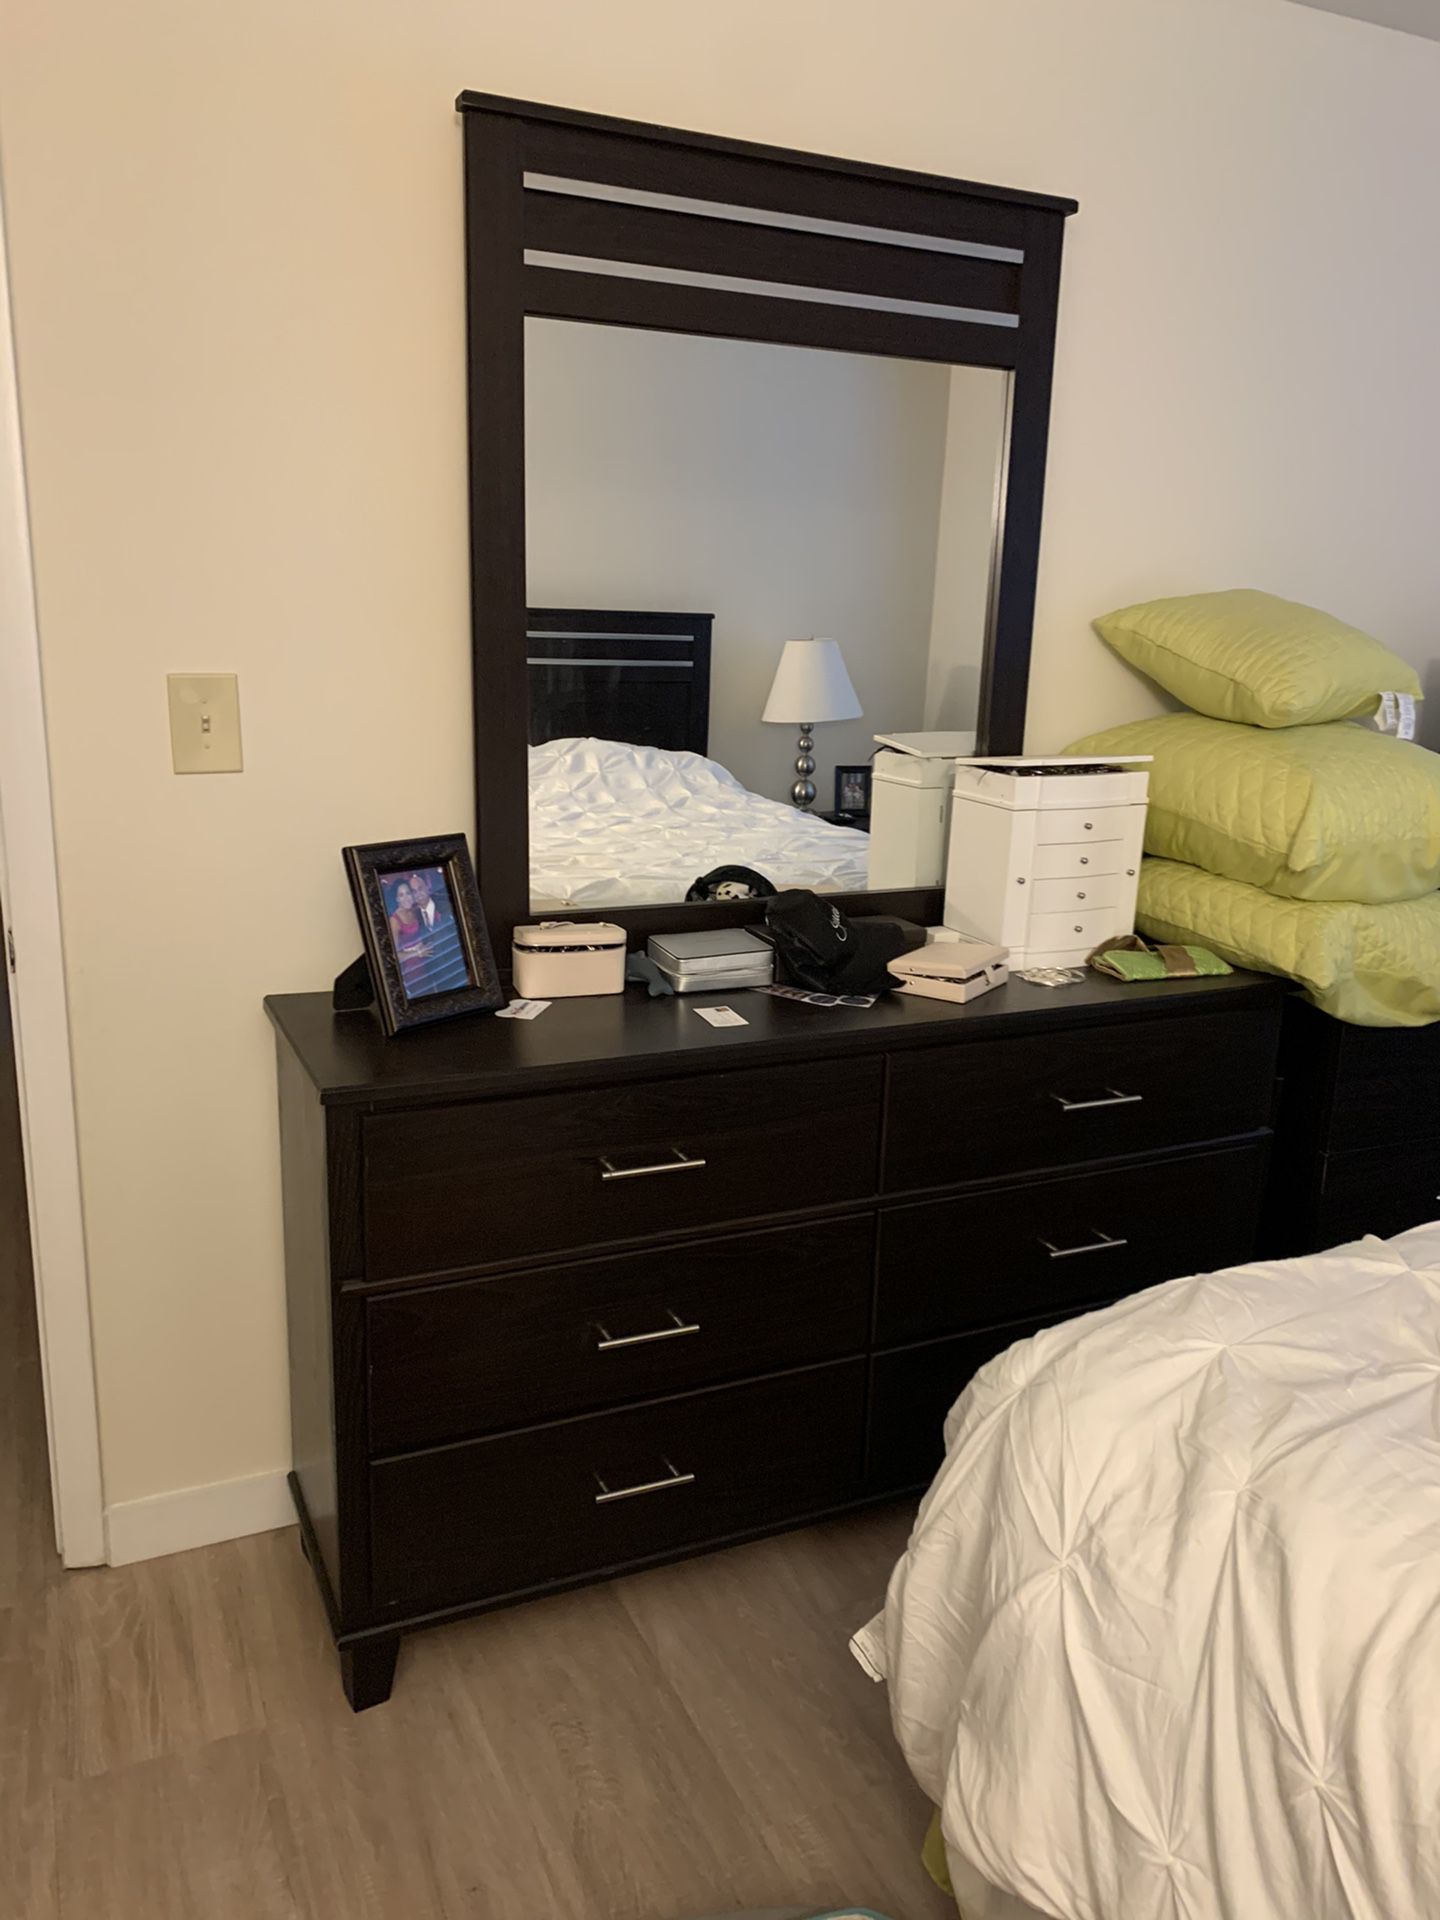 Bed set, dresser, and nightstands